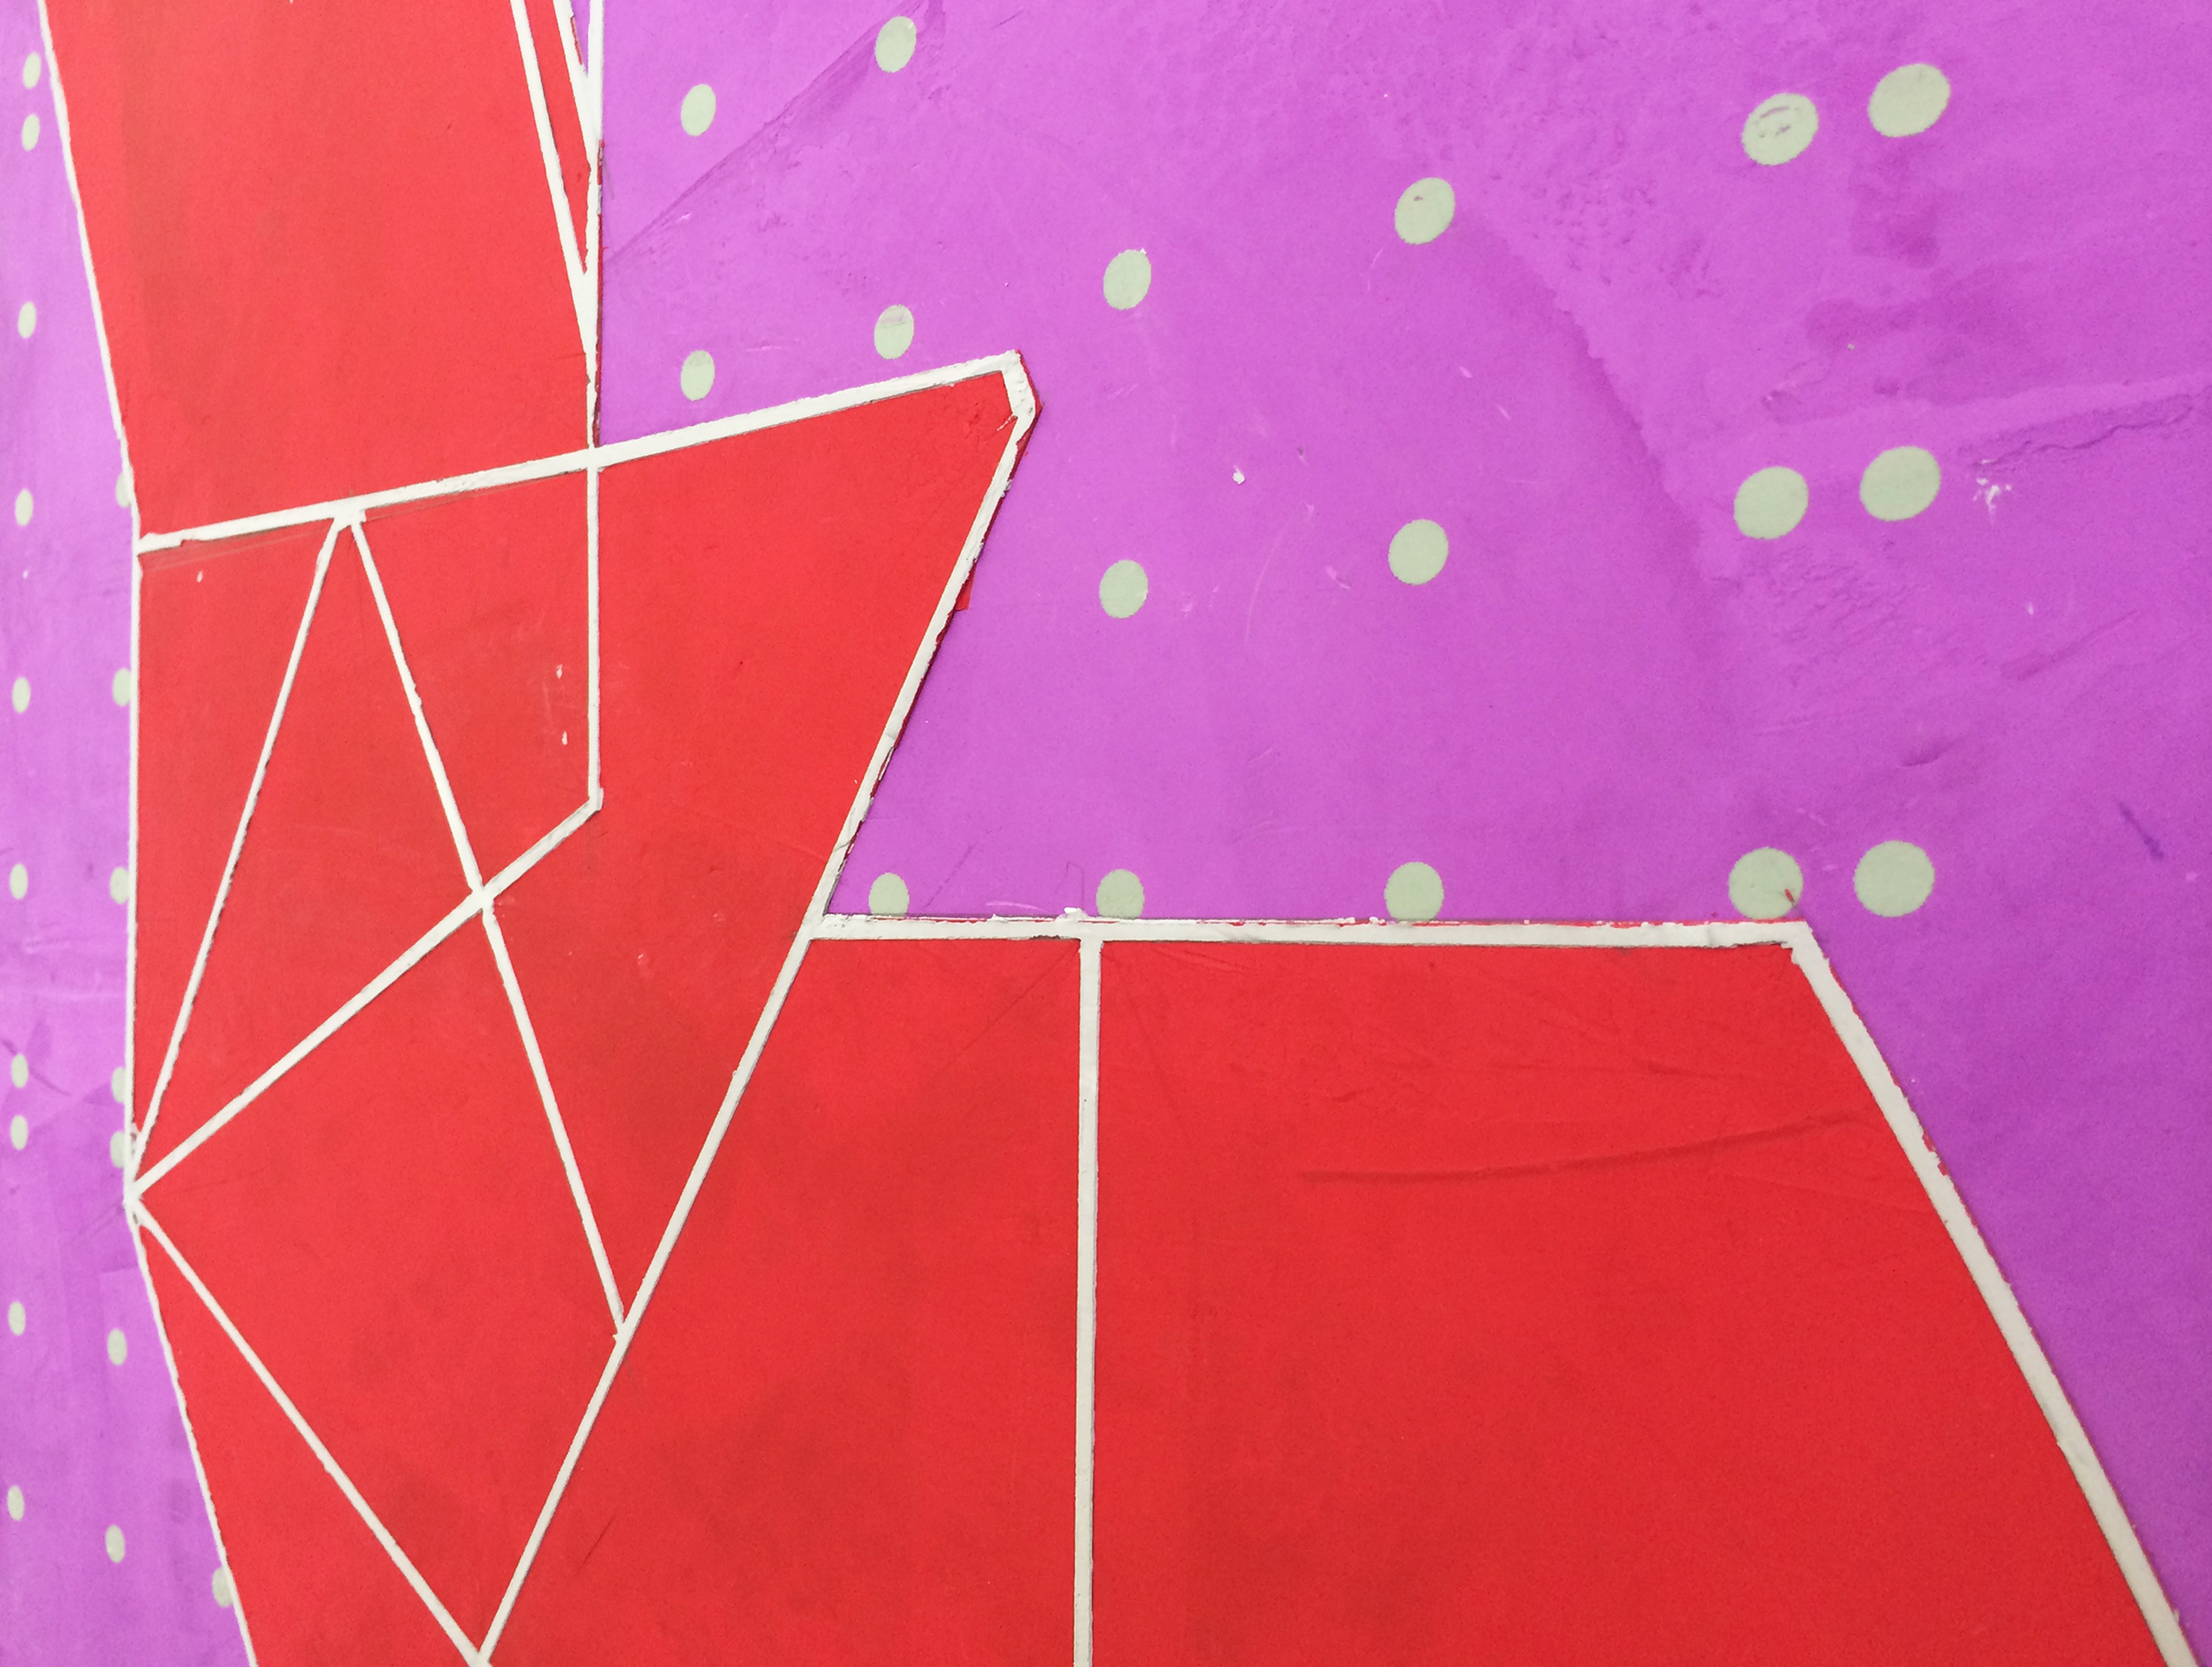   ELISE FERGUSON  (detail)&nbsp; Tropic , 2016, pigmented plaster on panel, 30" x 40" 